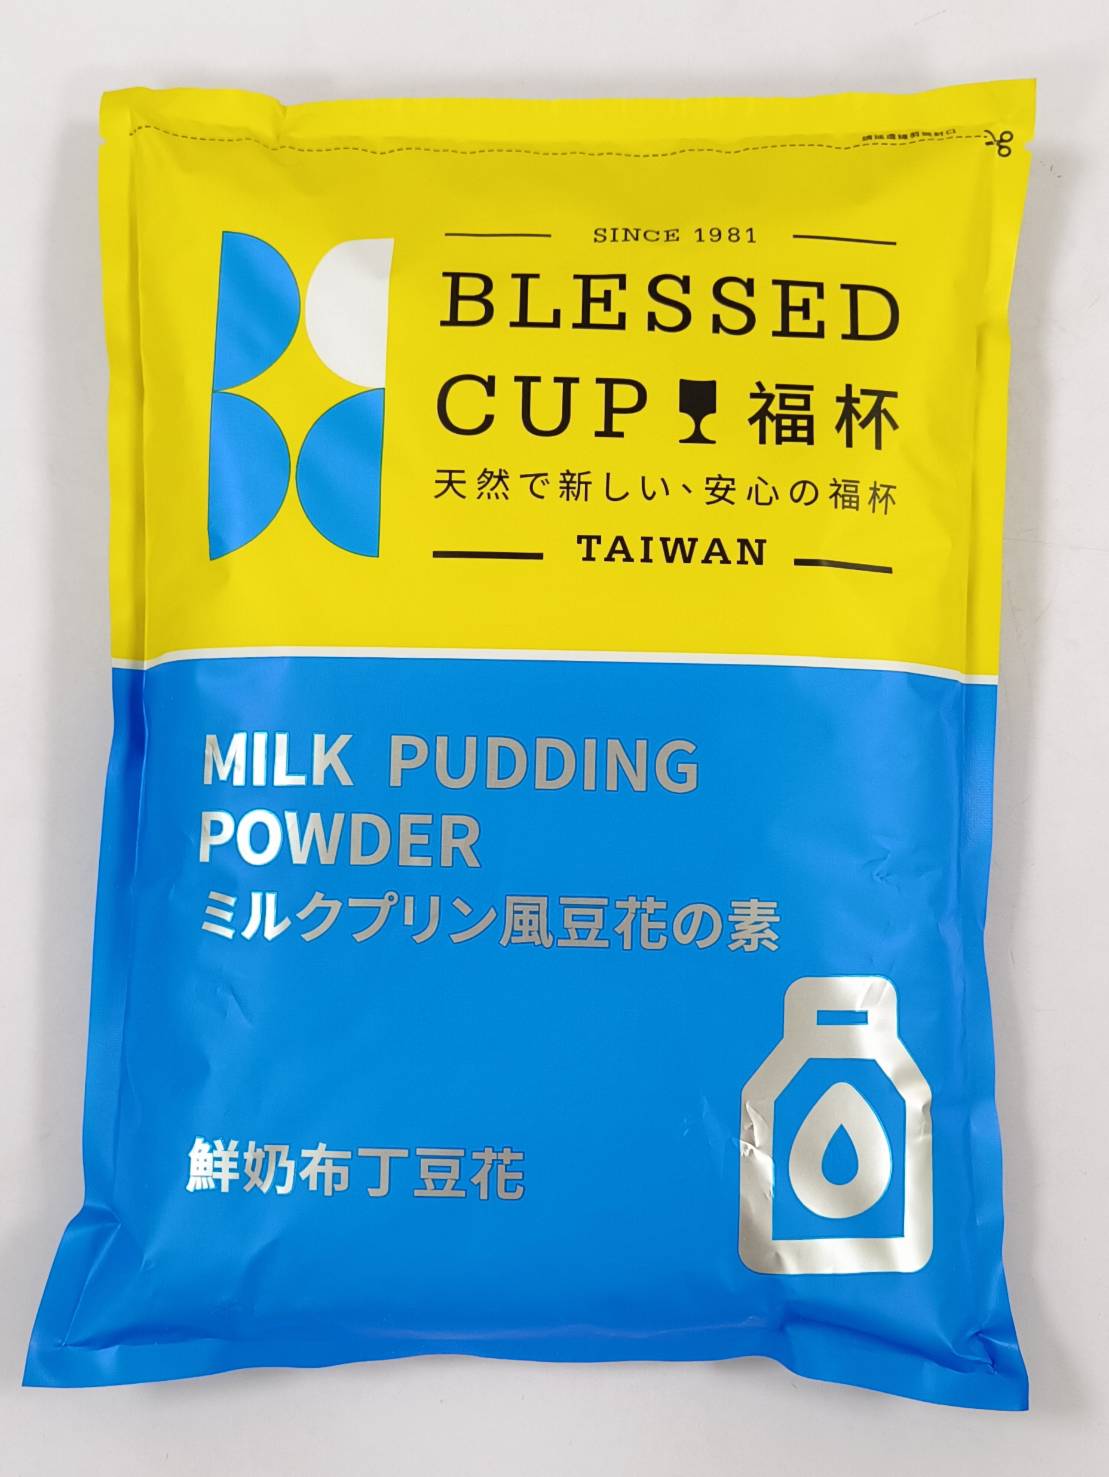 台灣布丁粉及膠凍類產品預拌粉的領導品牌--東承食品有限公司首頁